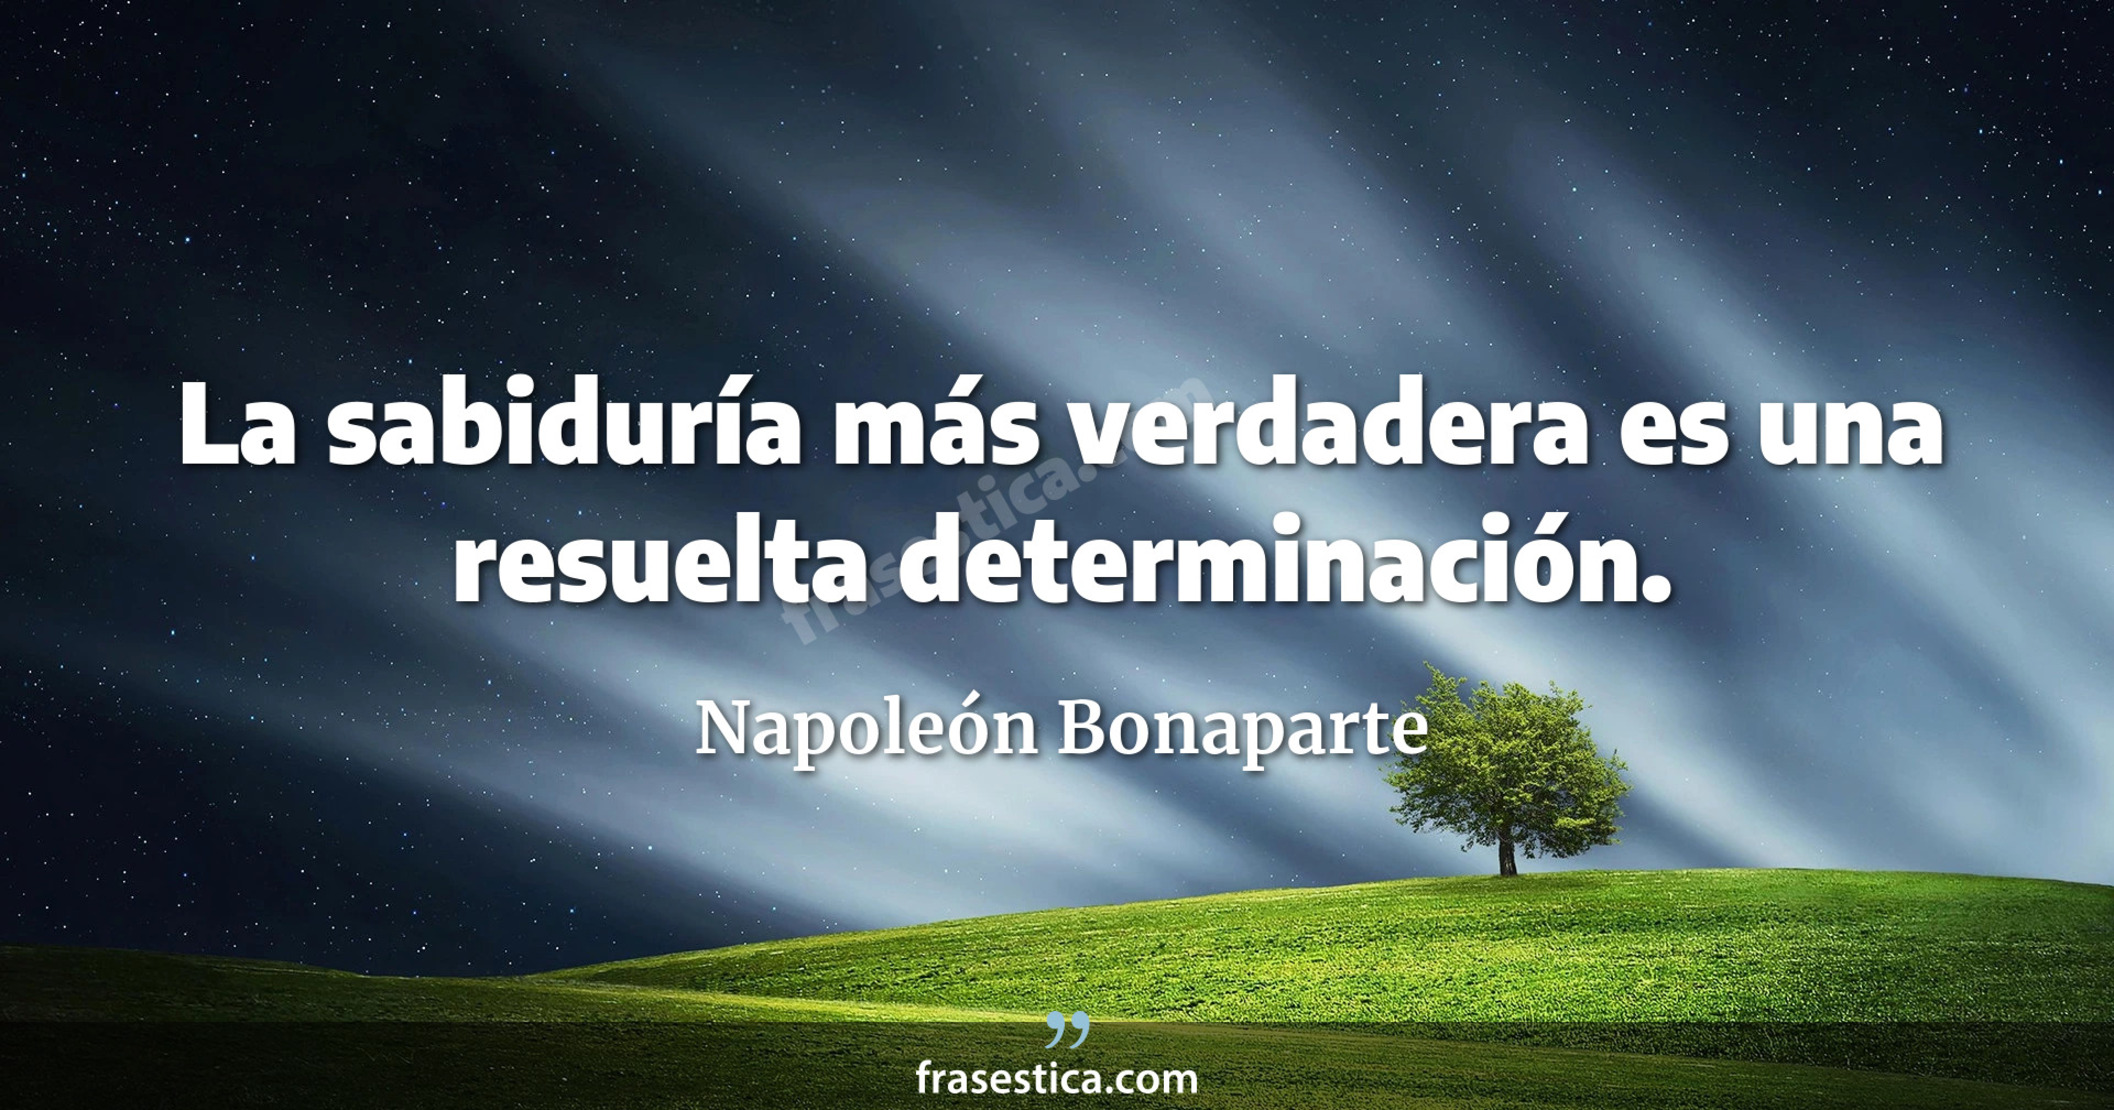 La sabiduría más verdadera es una resuelta determinación. - Napoleón Bonaparte